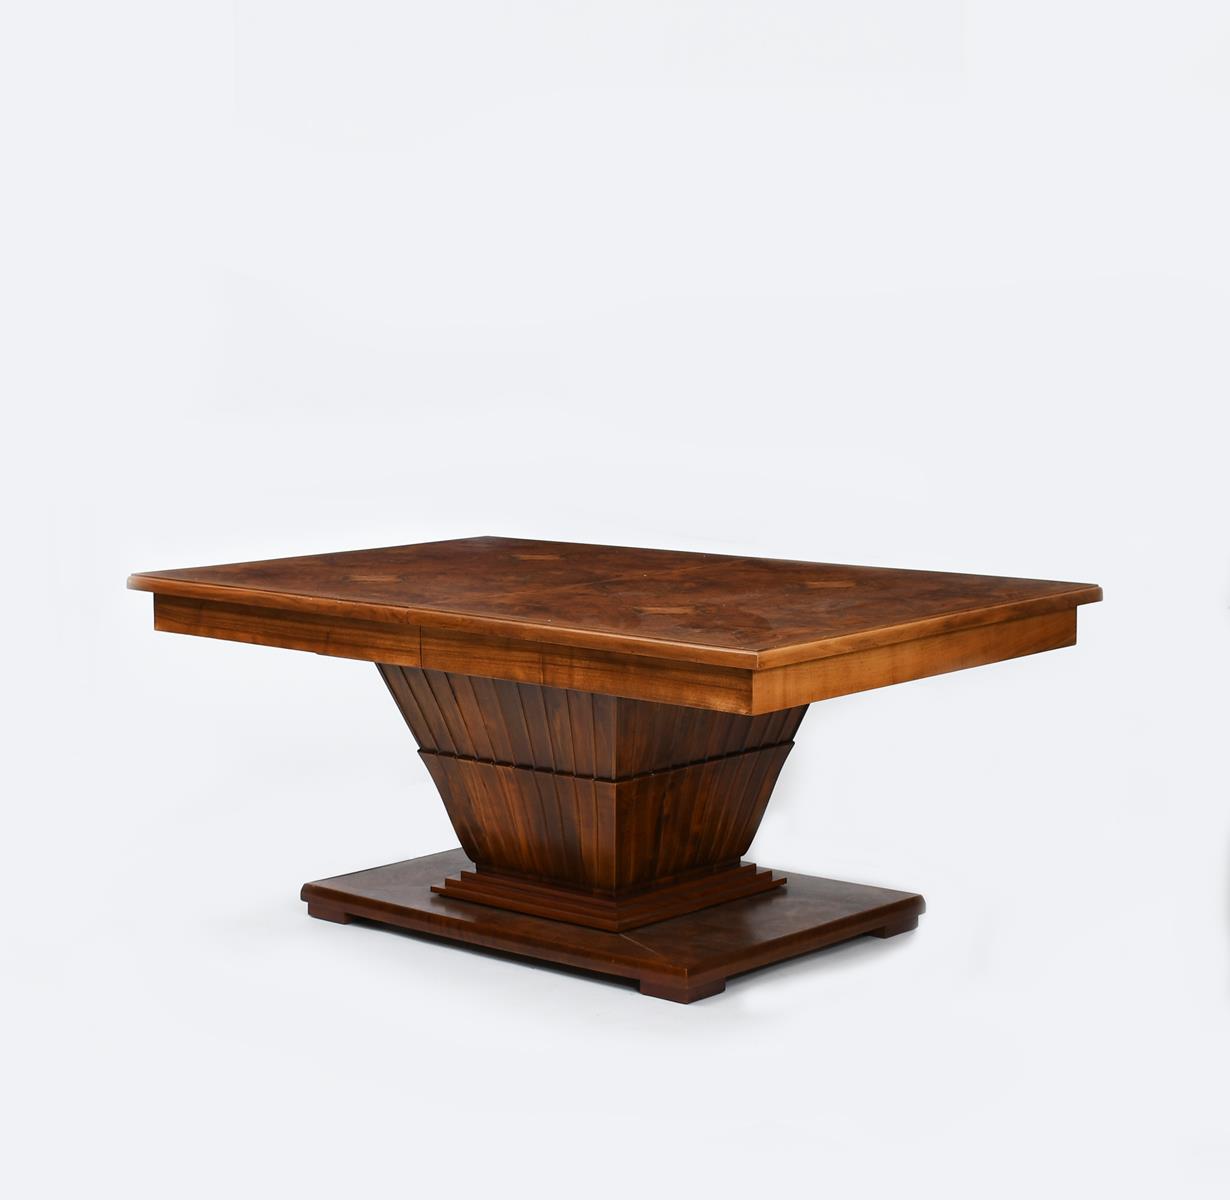 An Art Deco burr walnut extending pedestal dining table, the rectangular top with quarter-sawn